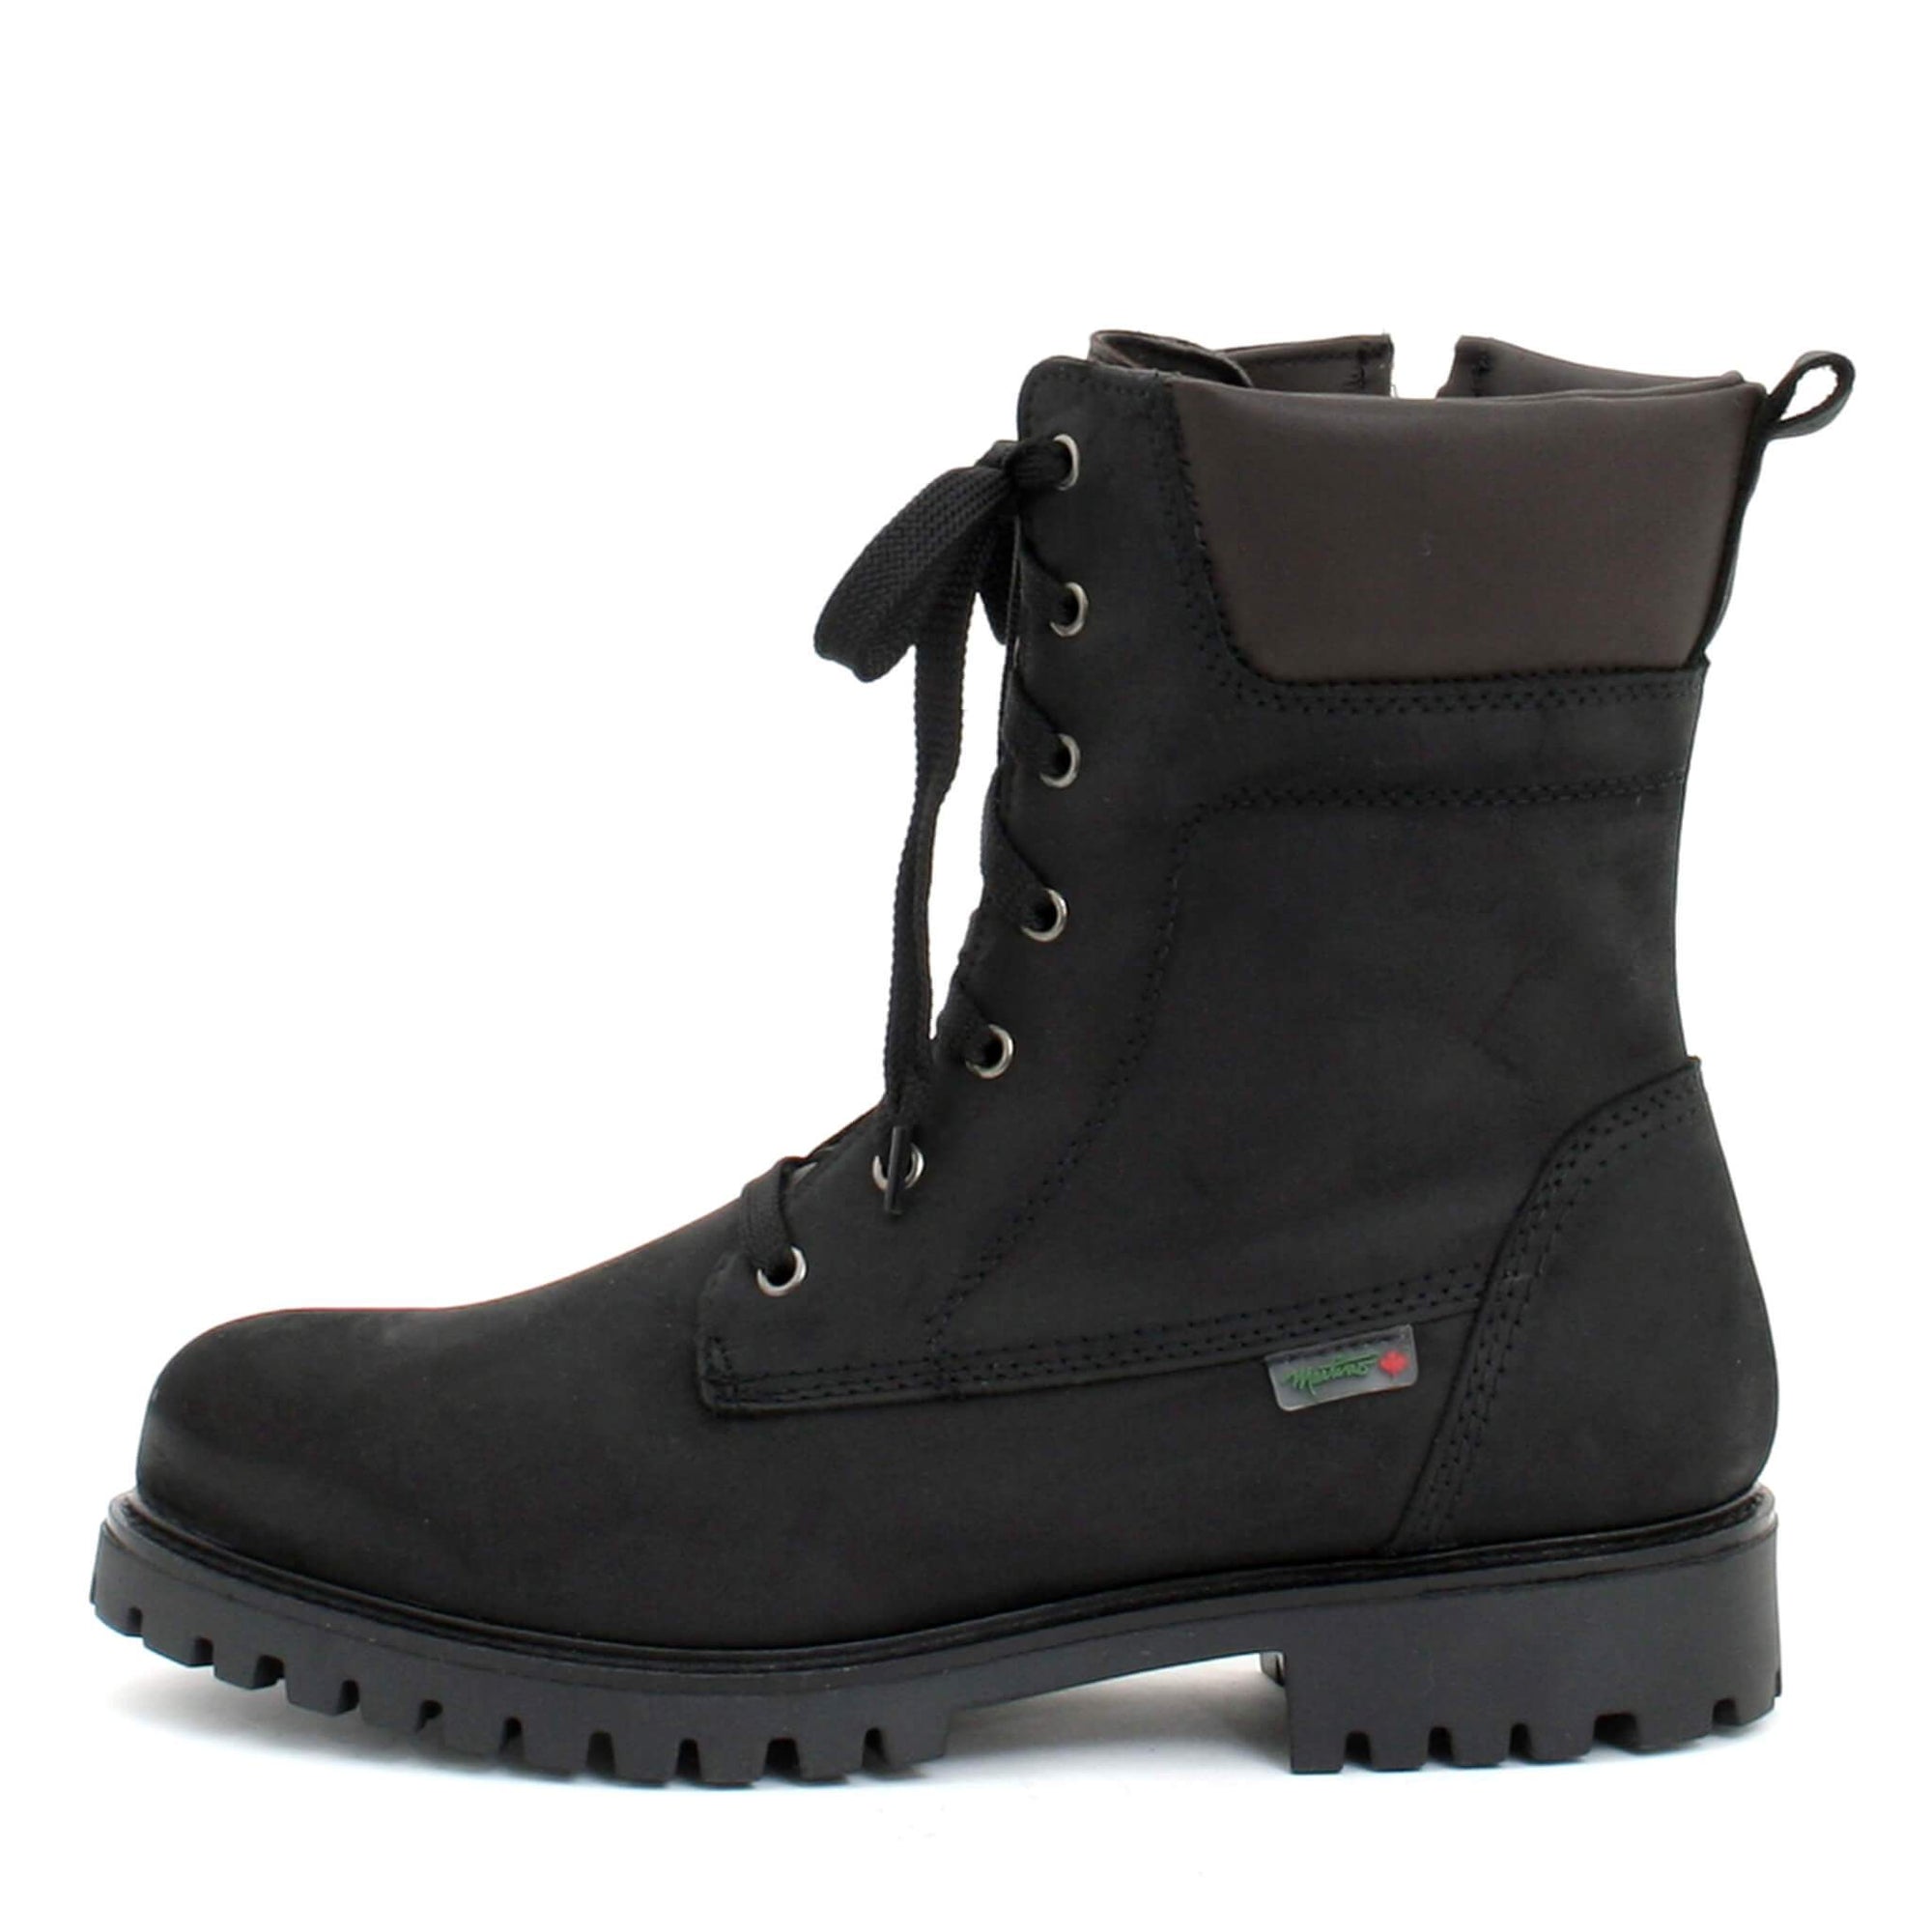 Nelson winter boot for men - Black-Brown